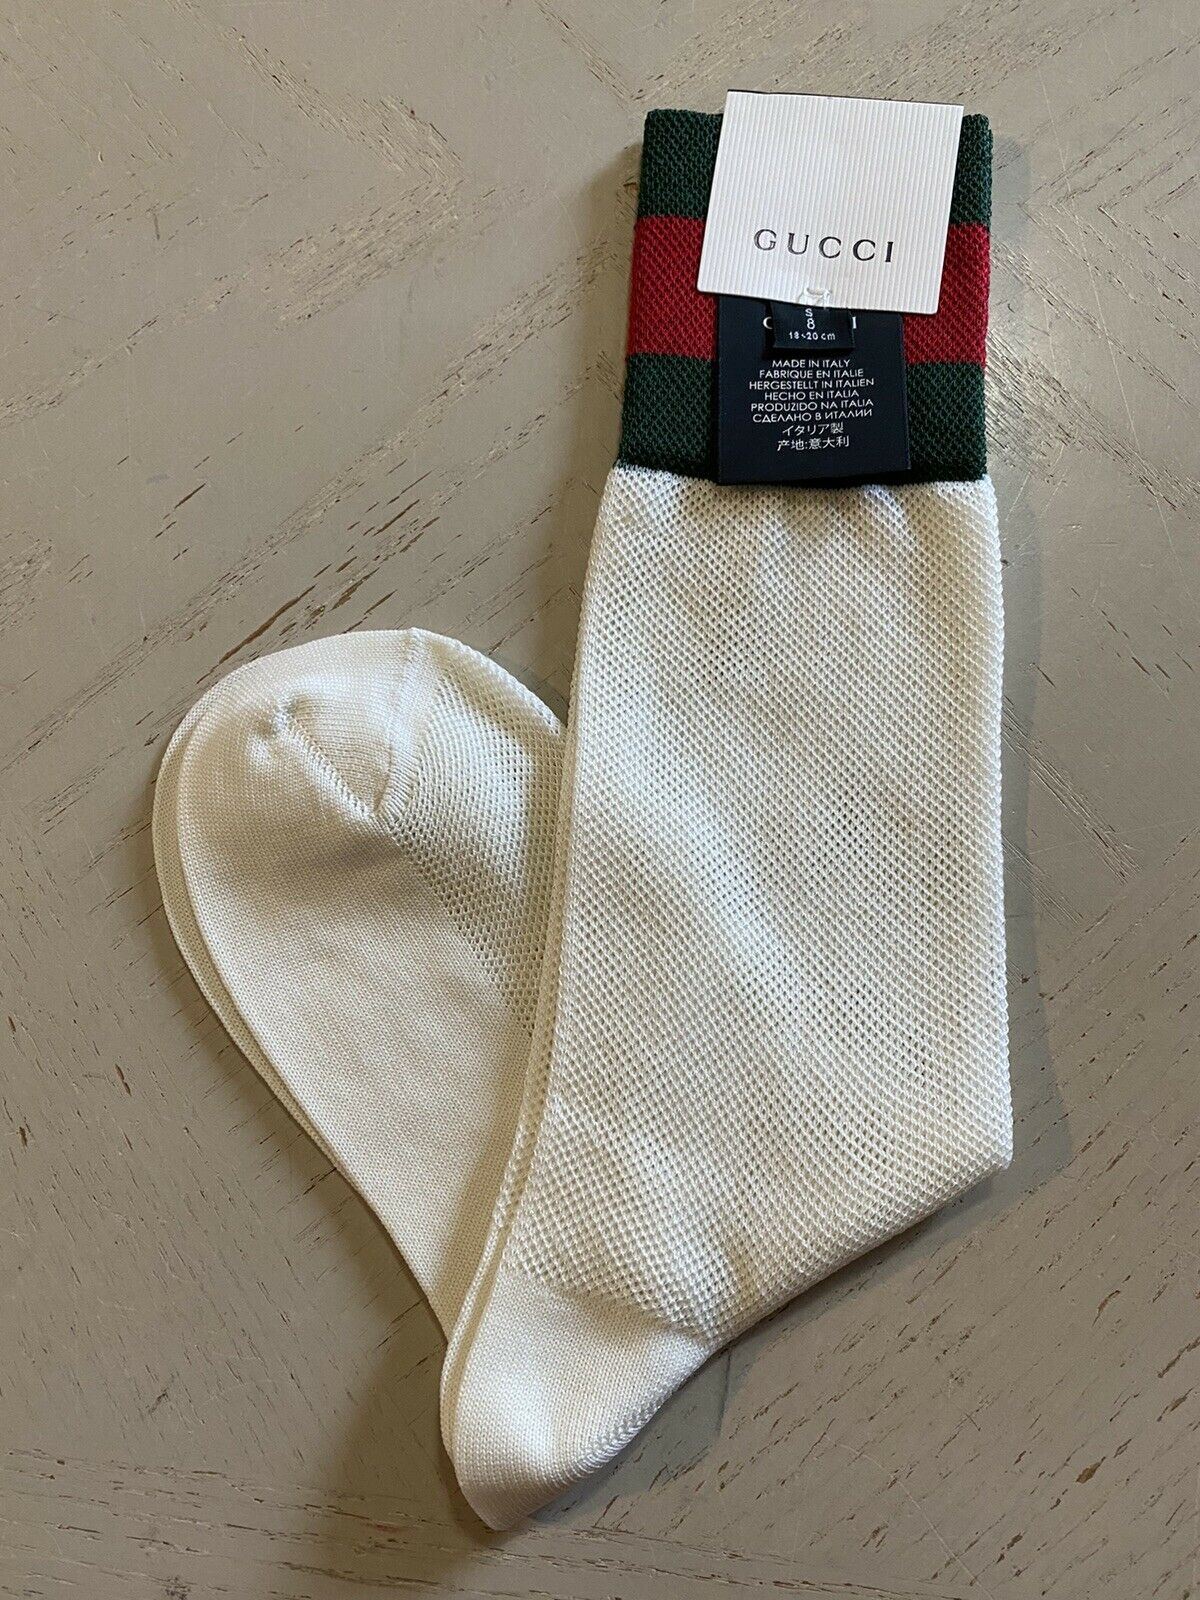 Хлопковые носки NWT Gucci с полосками красного/зеленого/слоновой кости, размер S, Италия